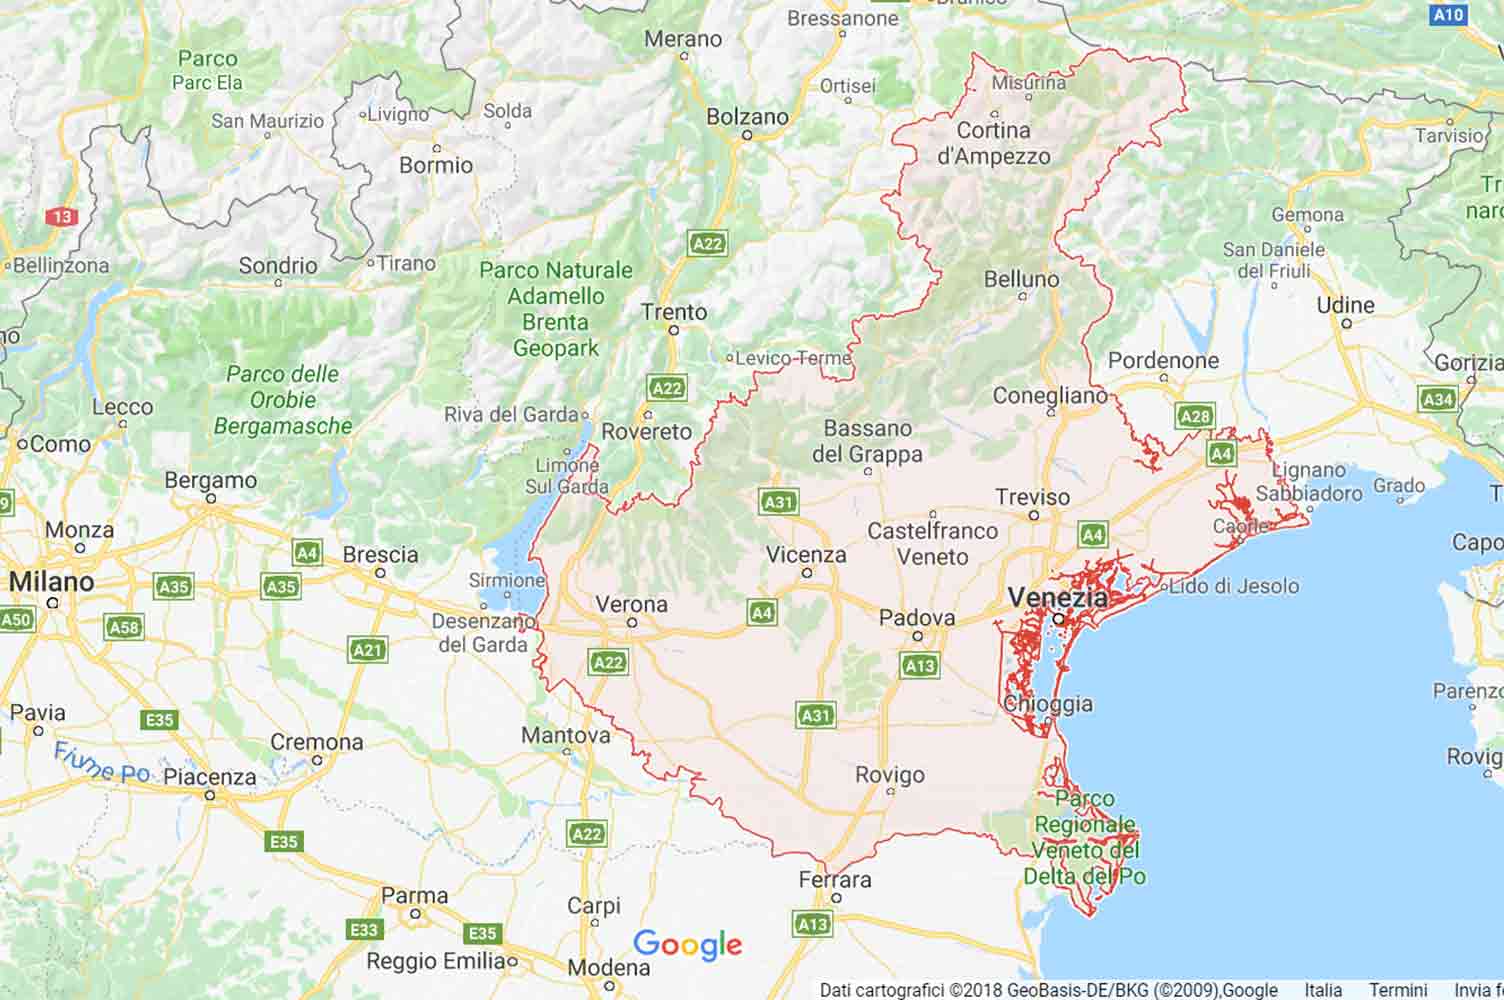 Veneto - Belluno - Cortina d'Ampezzo Preventivi Veloci google maps